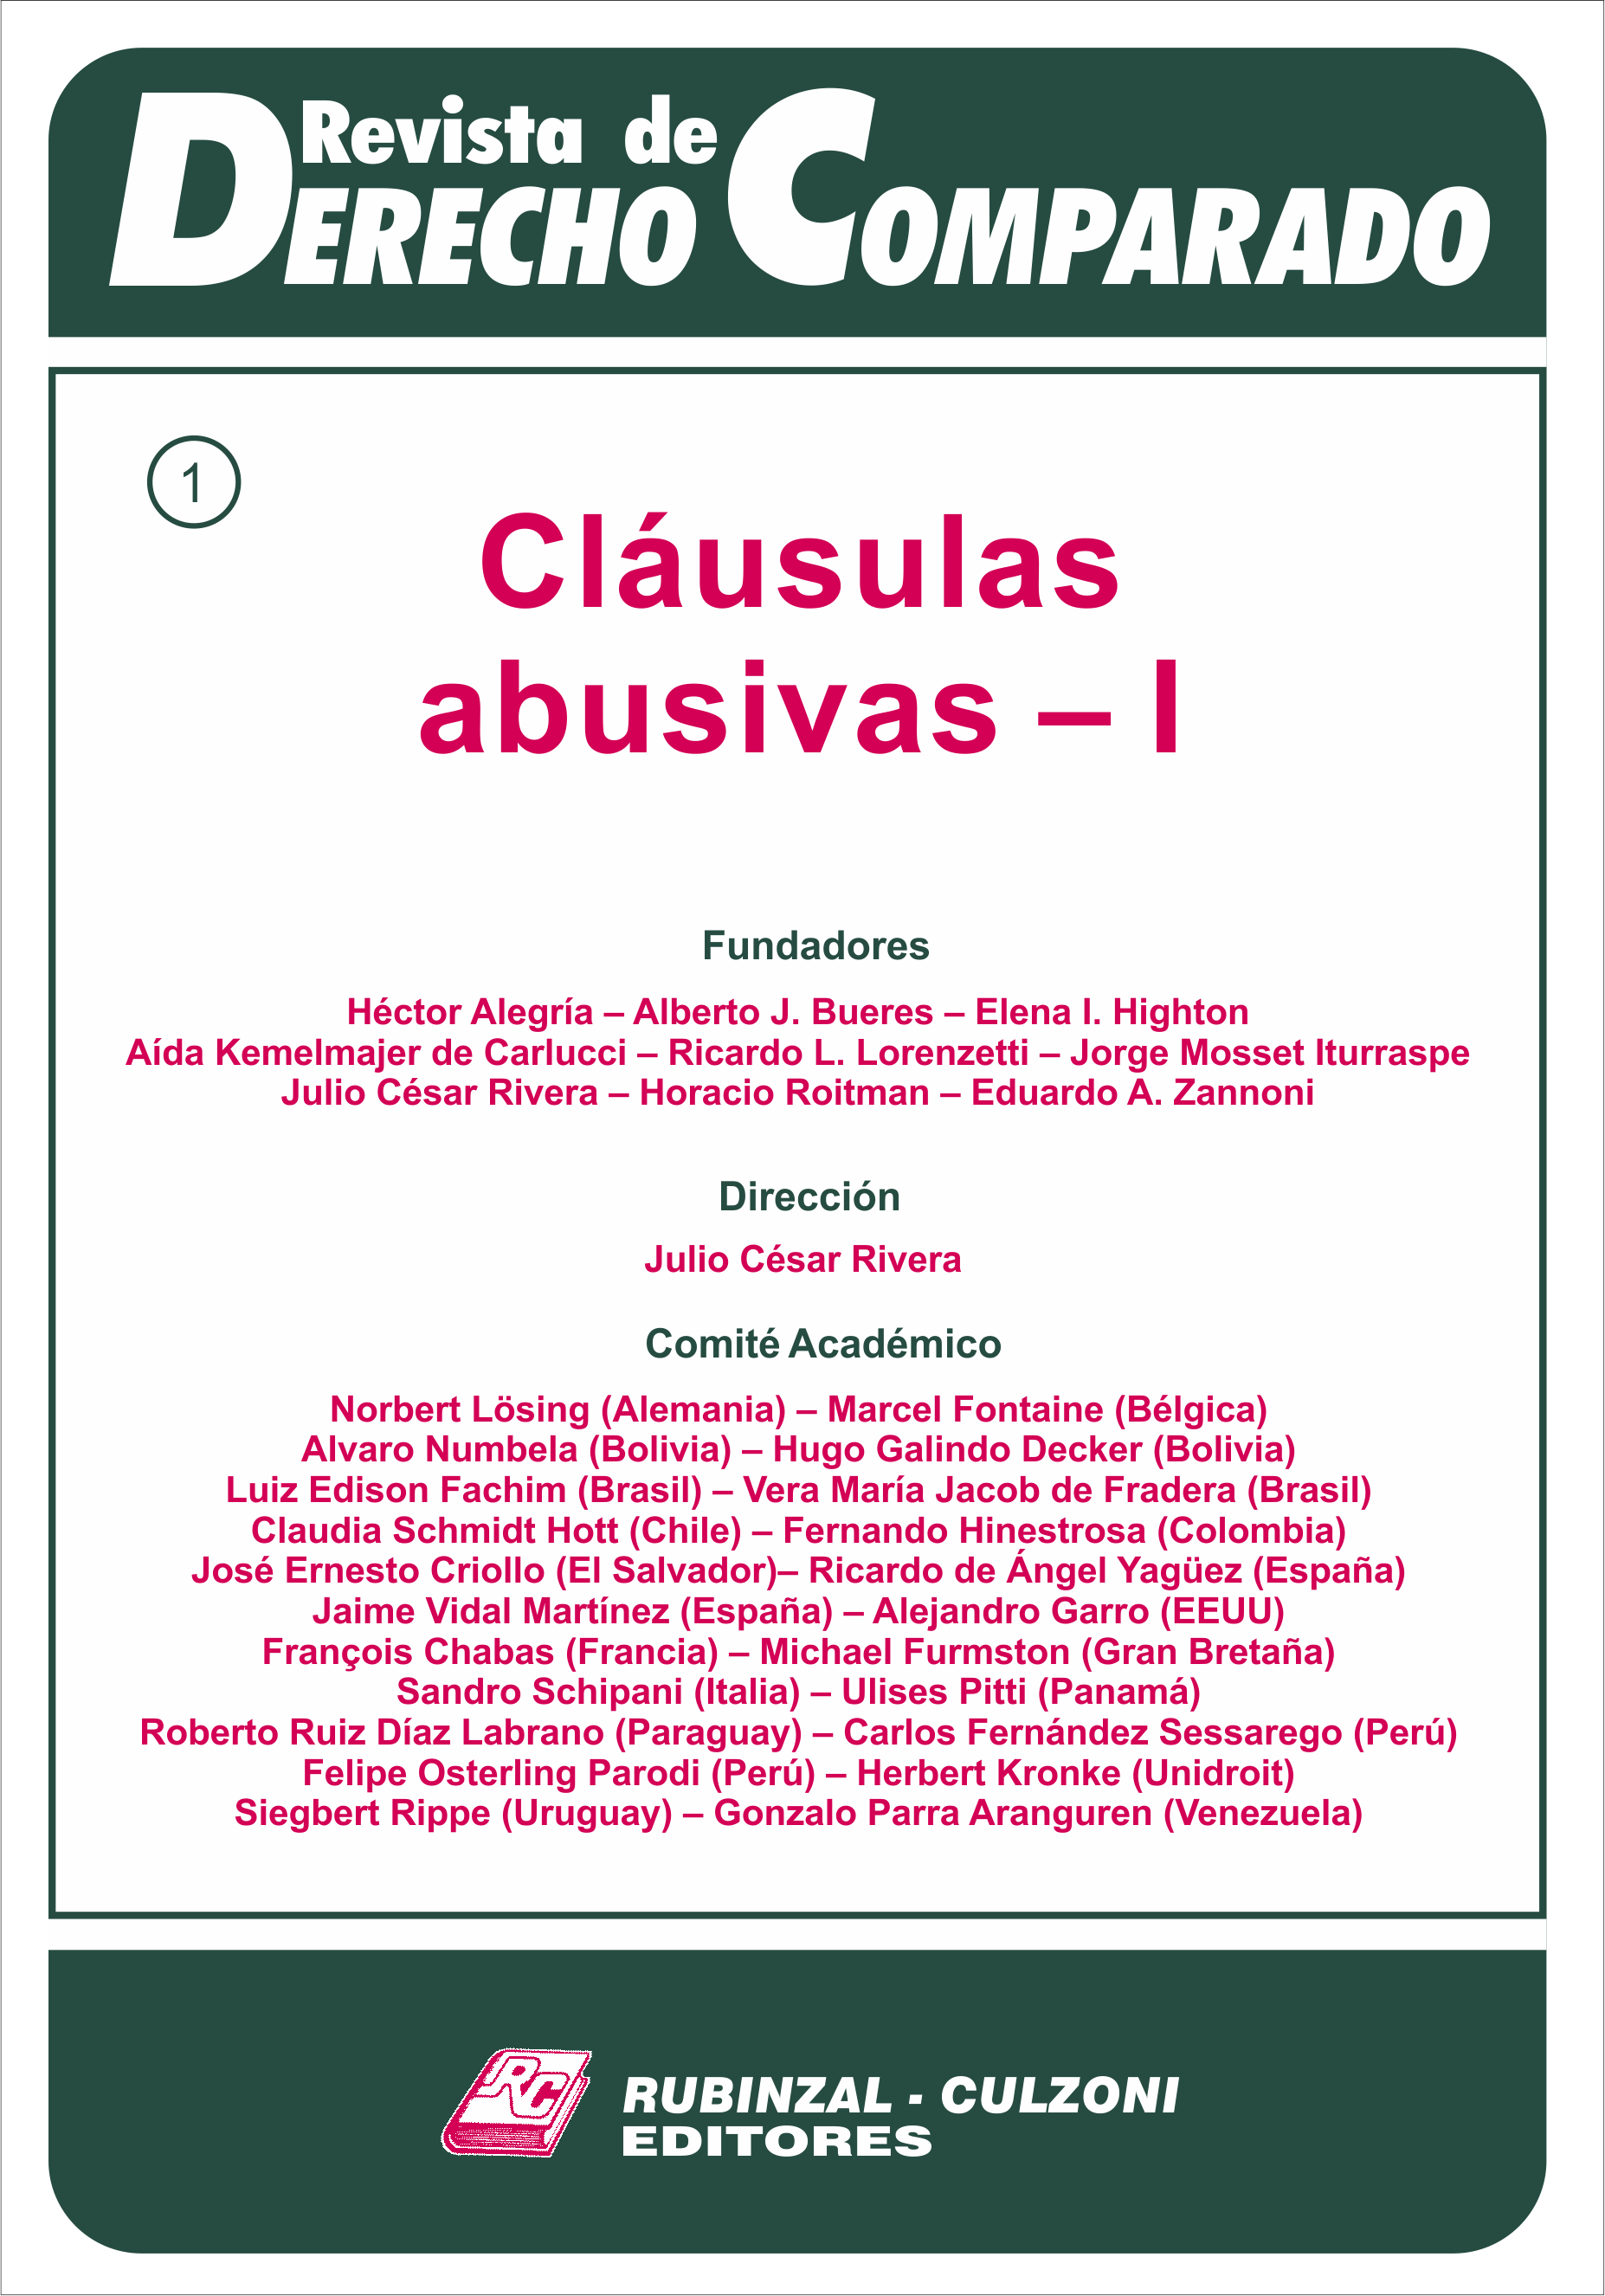 Revista de Derecho Comparado - Doctrina (Cláusulas abusivas - I).